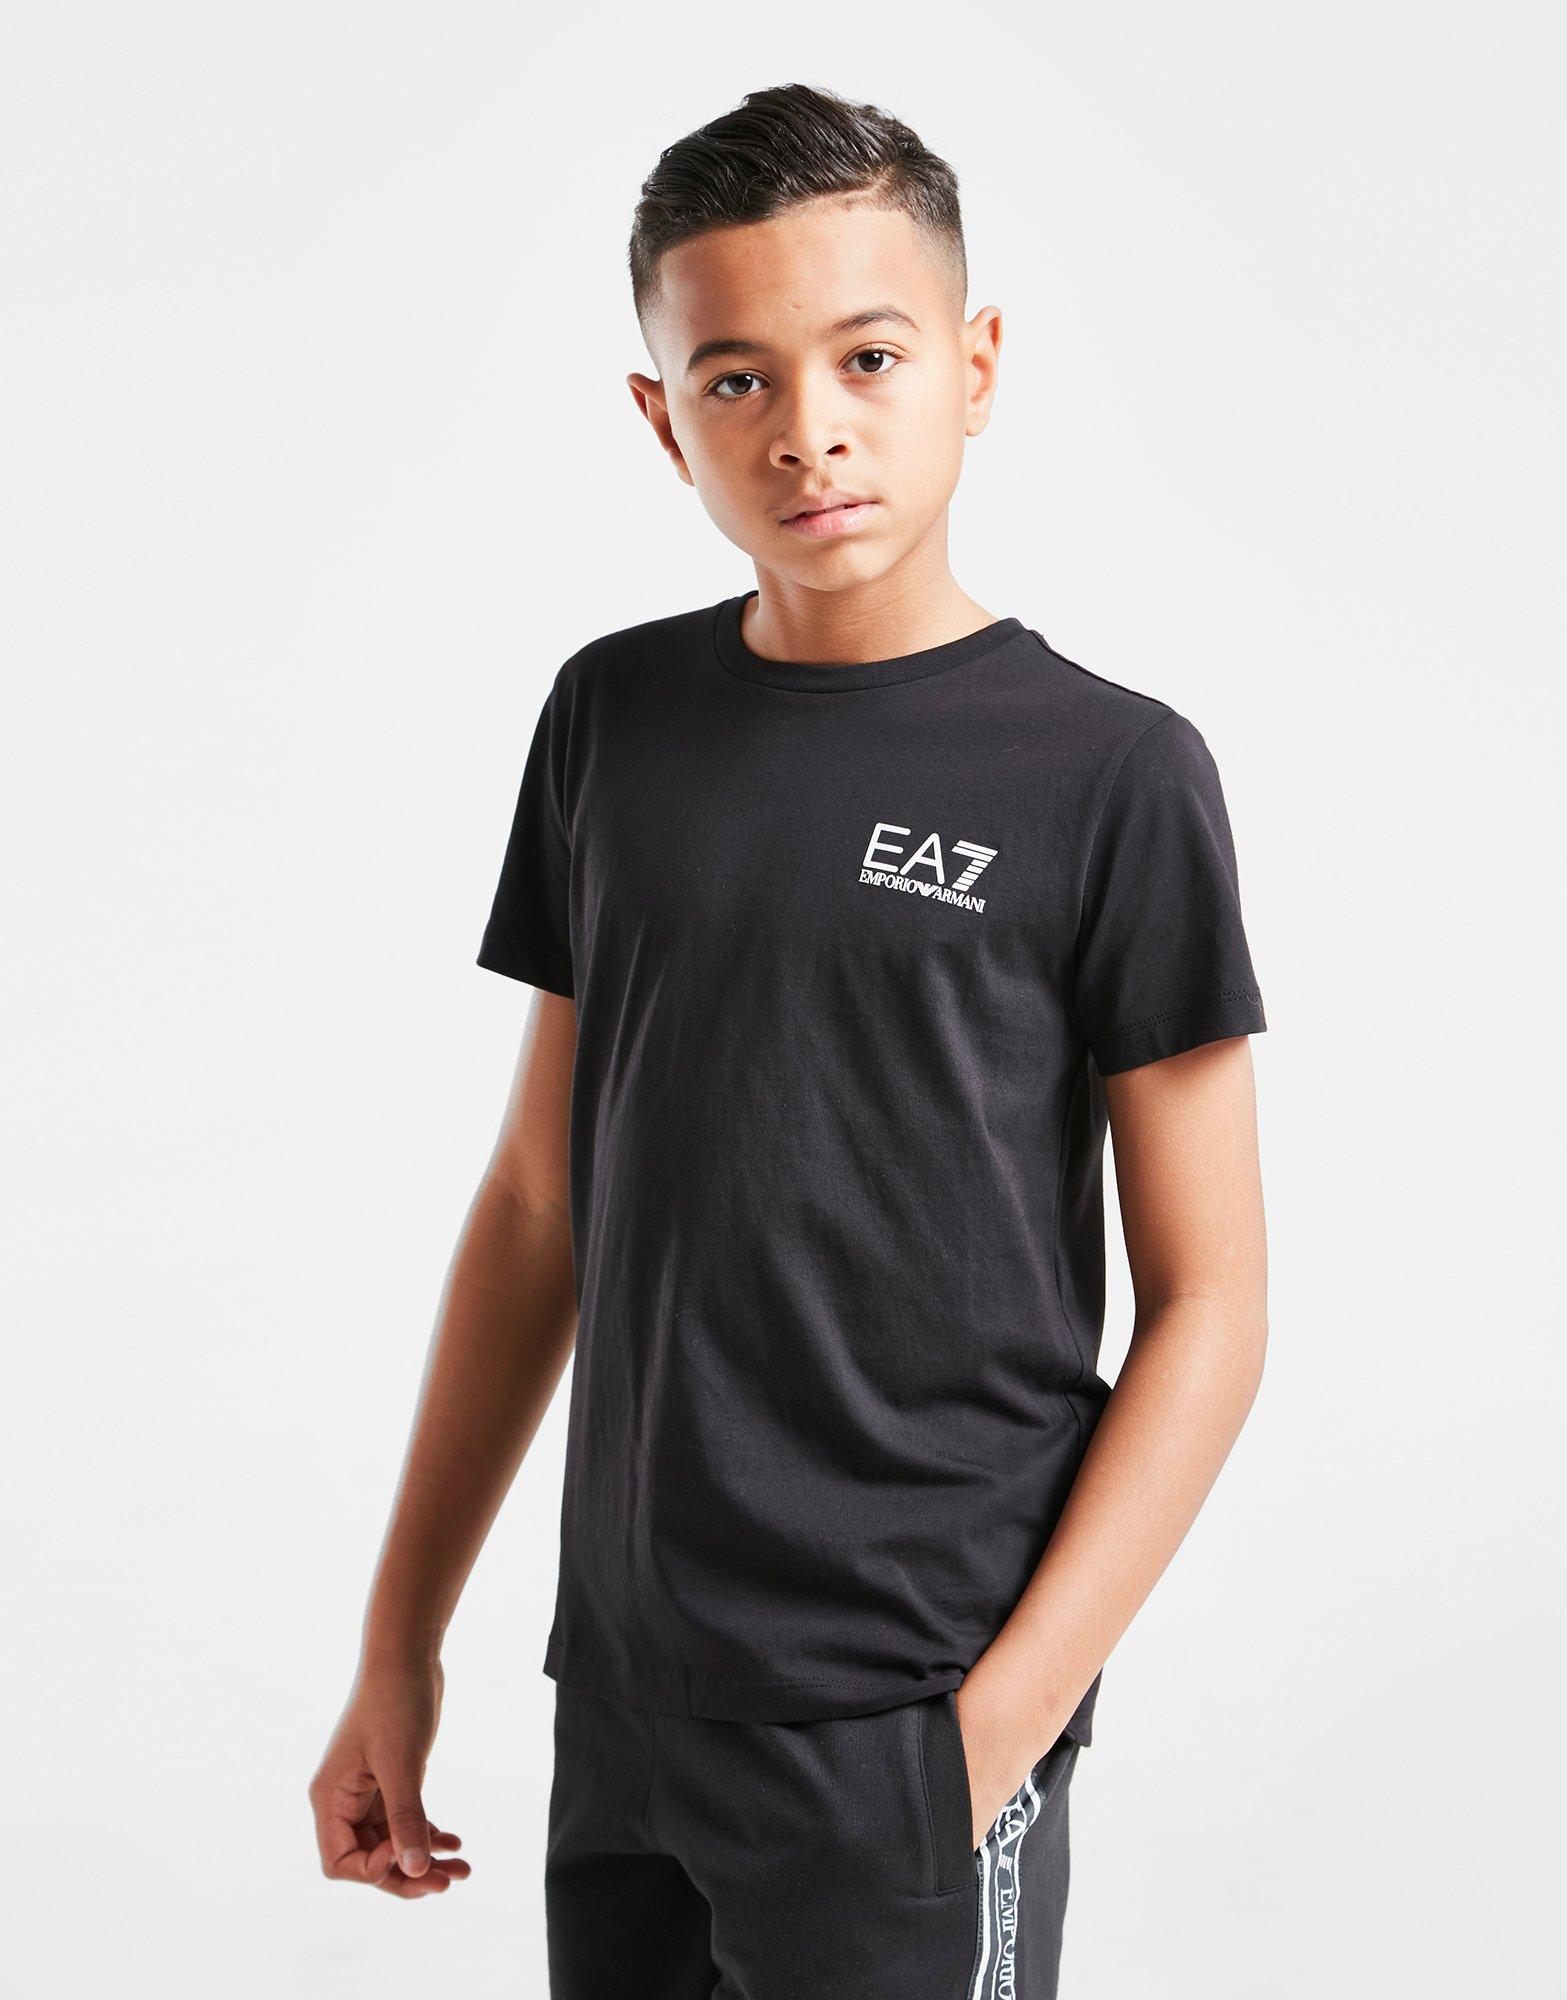 ea7 shirt junior